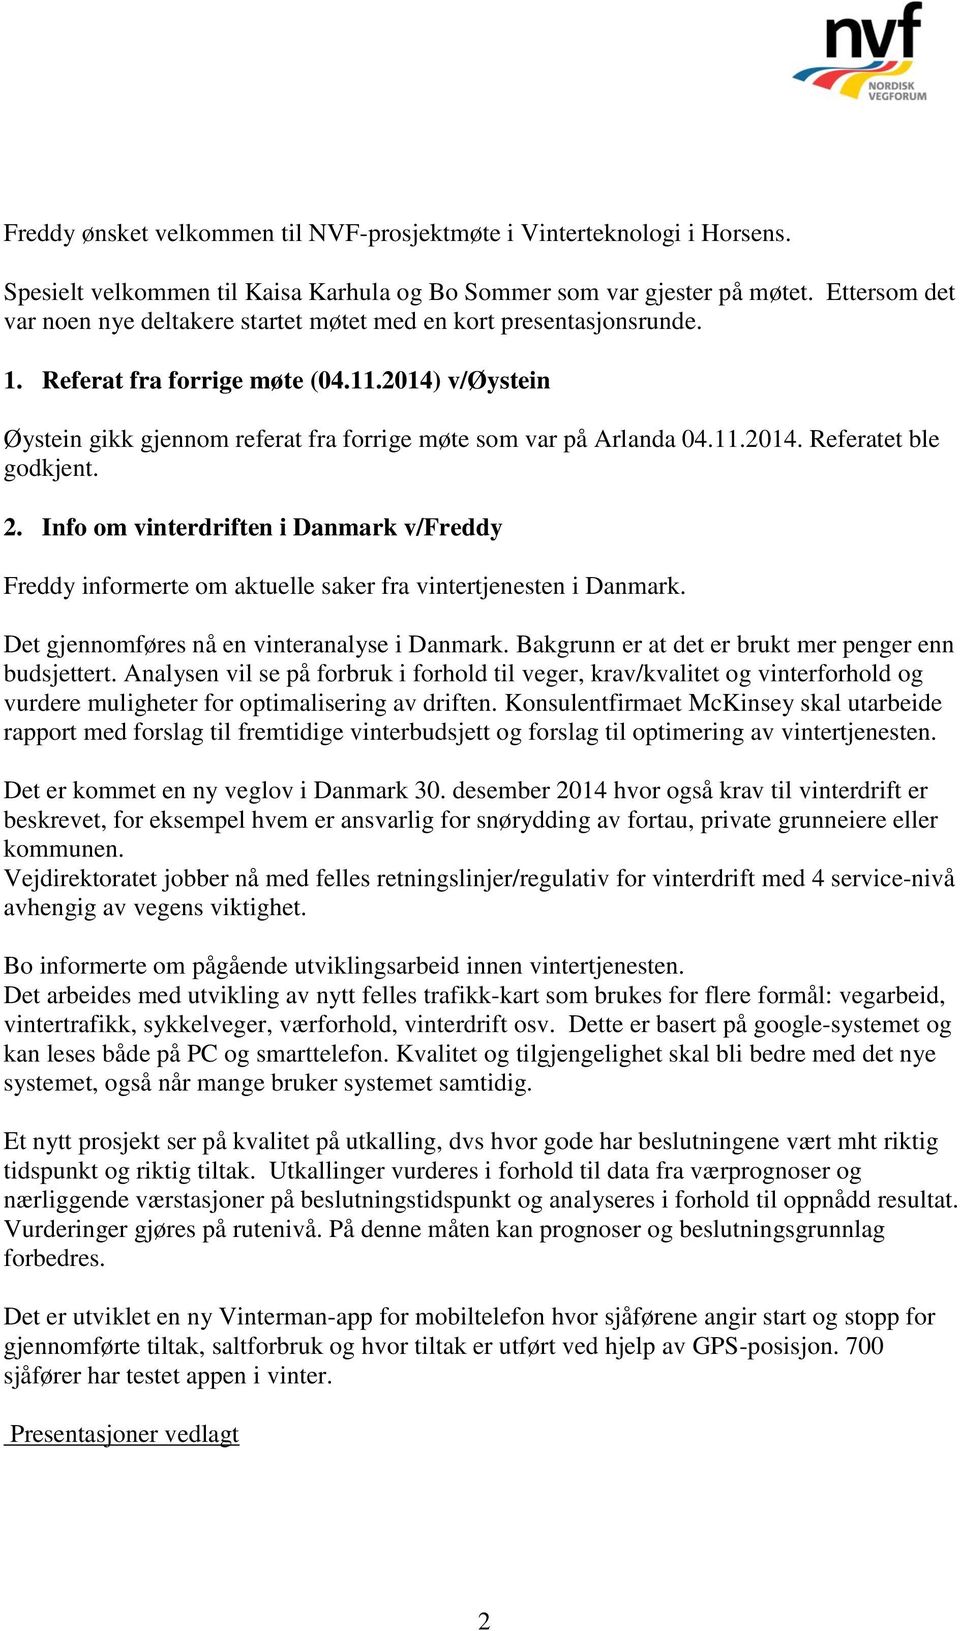 2014) v/øystein Øystein gikk gjennom referat fra forrige møte som var på Arlanda 04.11.2014. Referatet ble godkjent. 2.